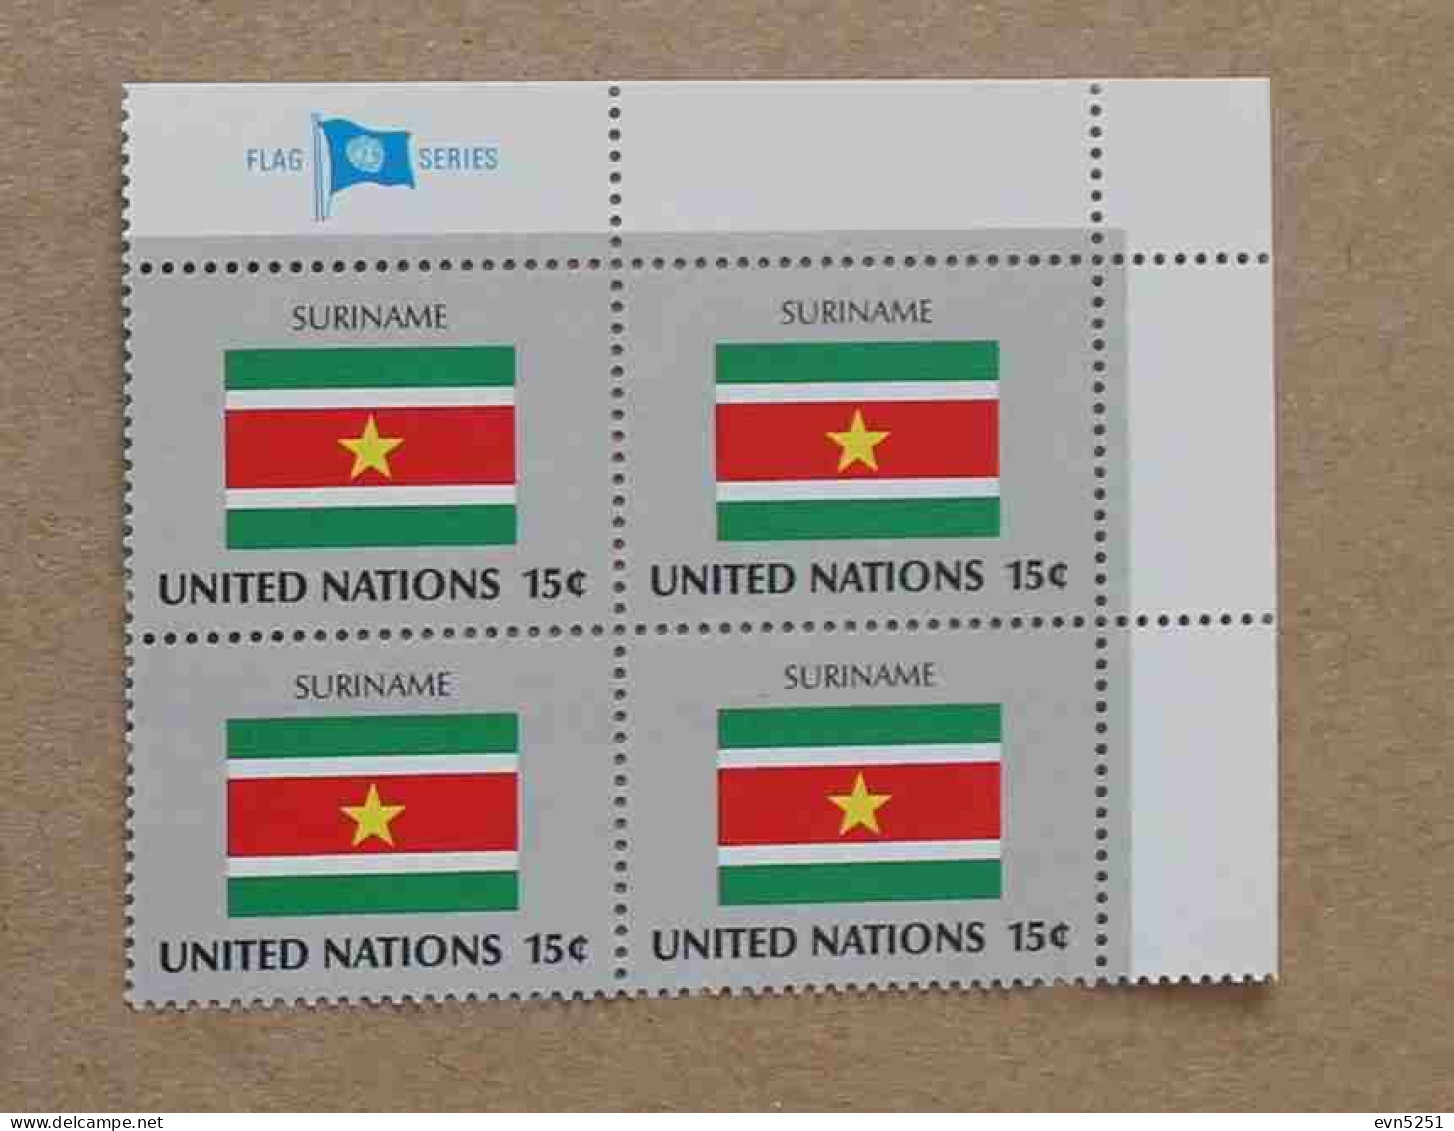 Ny80-01 : Nations-Unies (N-Y) - Drapeaux Des Etats Membres De L'ONU, Suriname Avec Une Vignette "FLAG SERIES" - Neufs